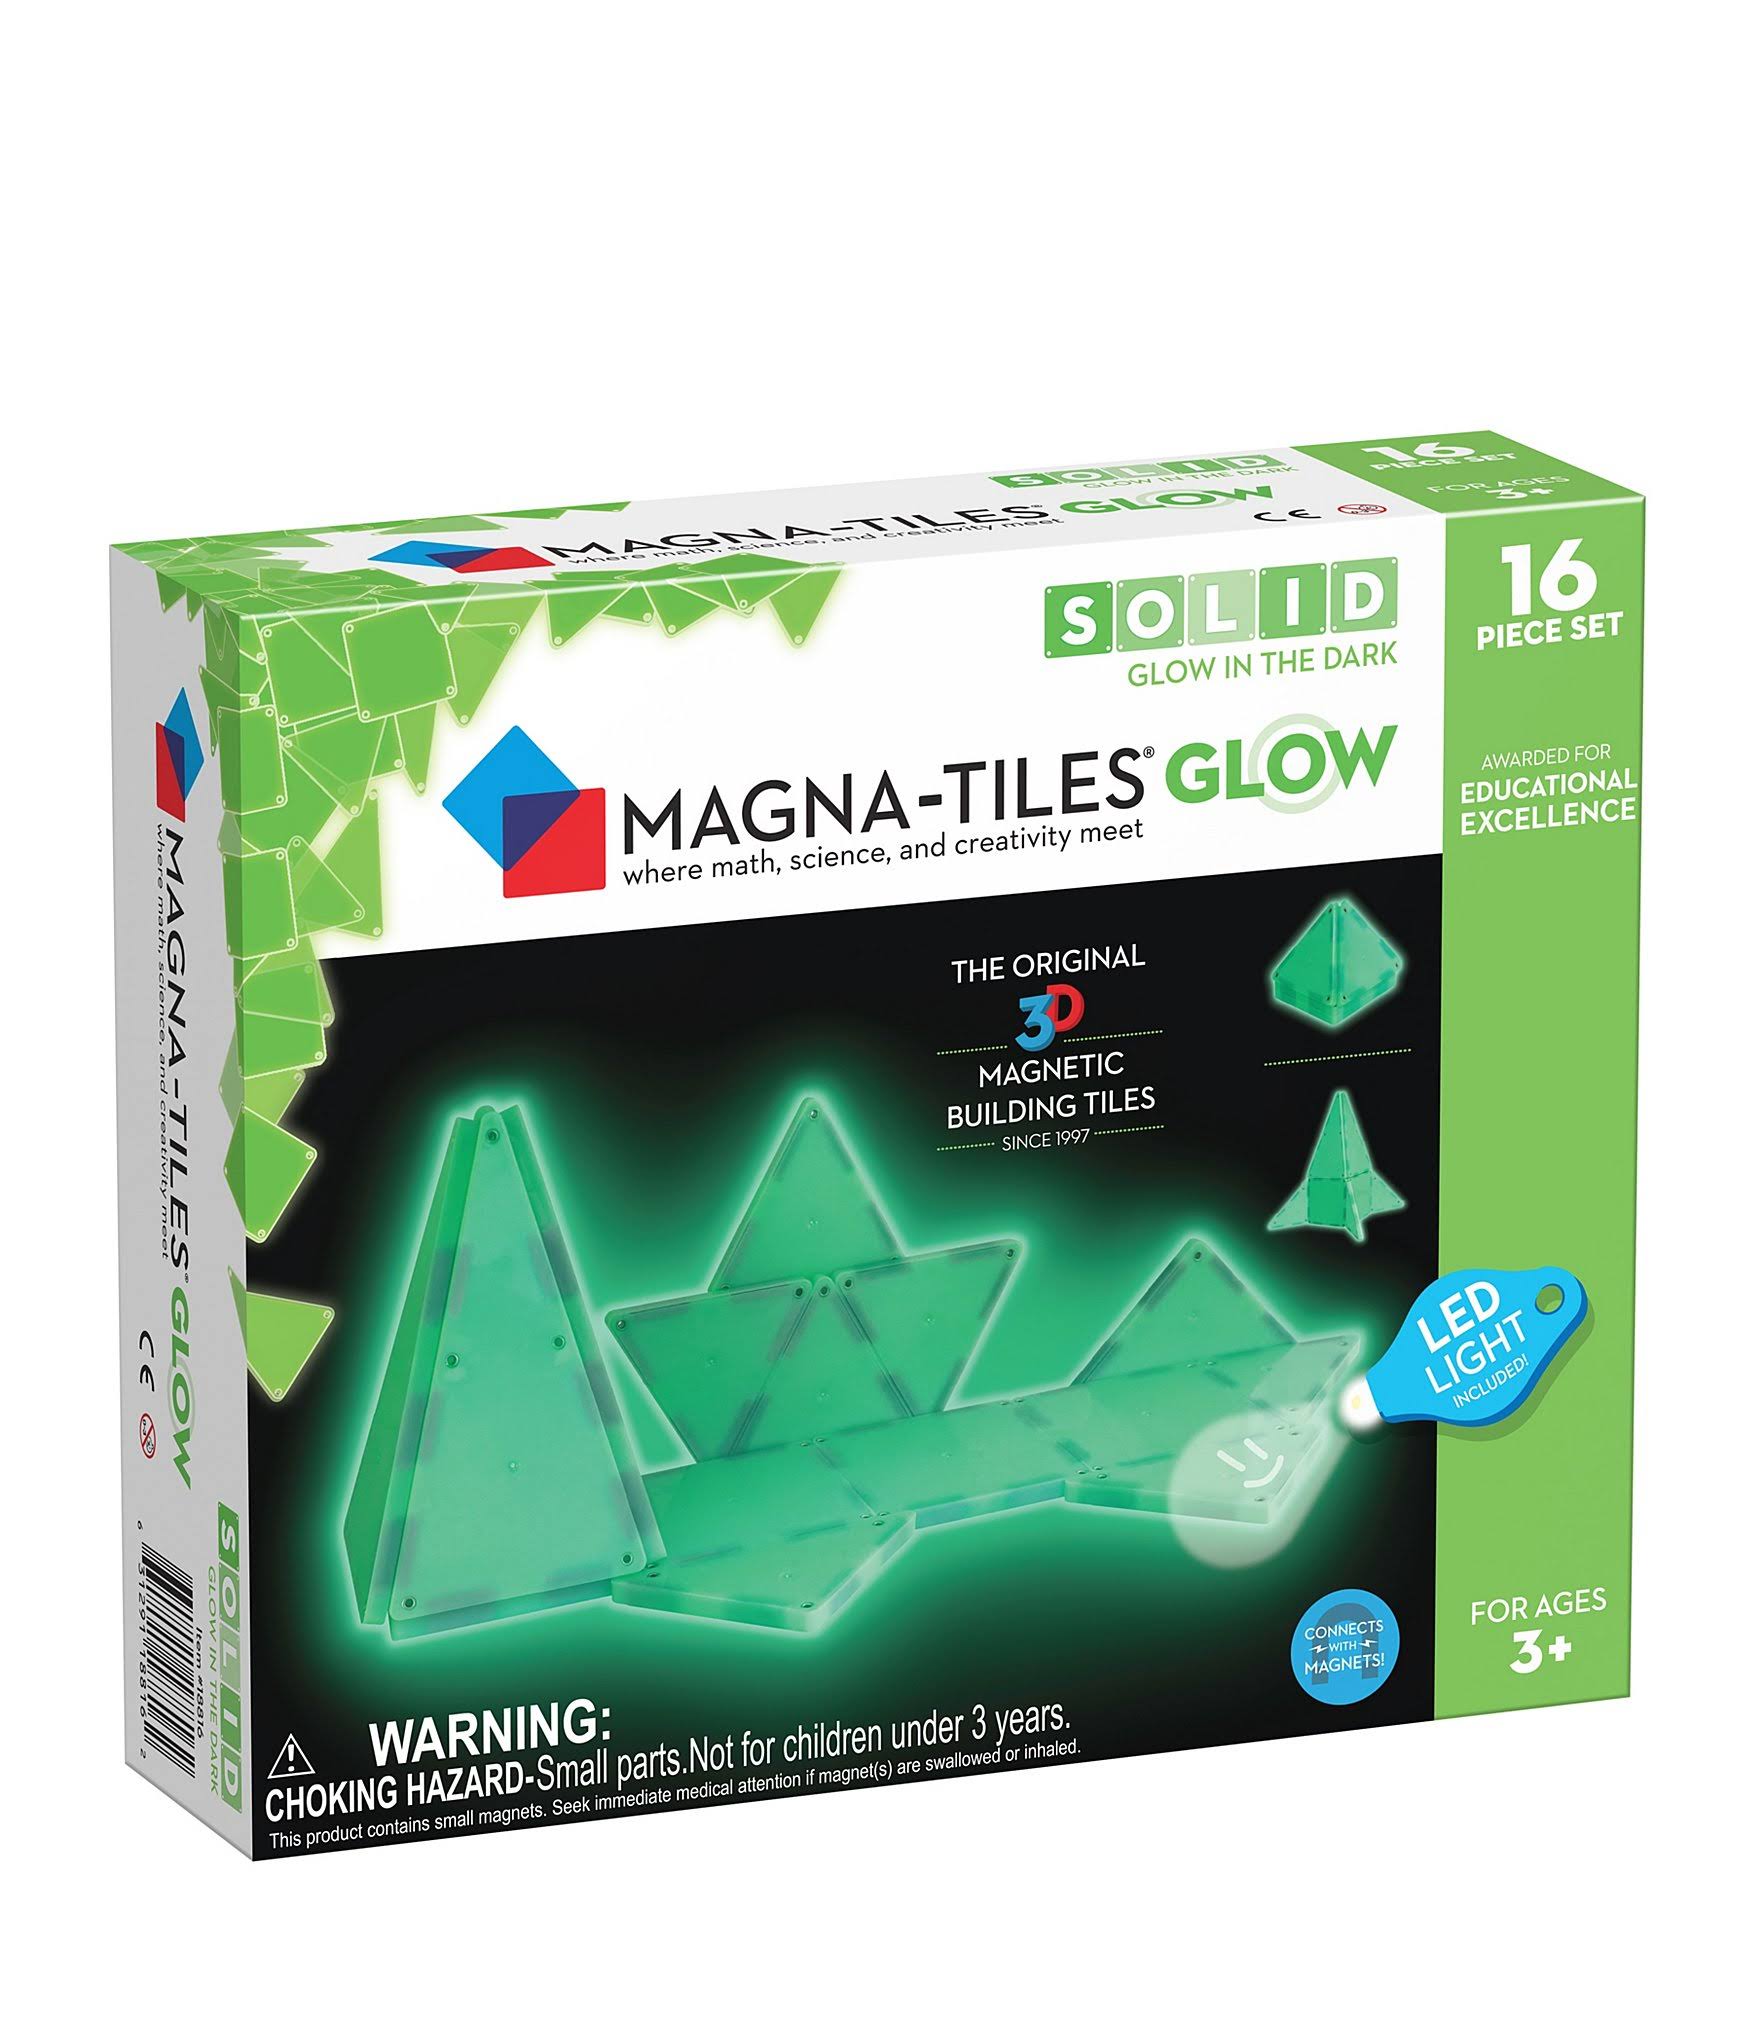 Magna-Tiles Glow 16 Piece Set